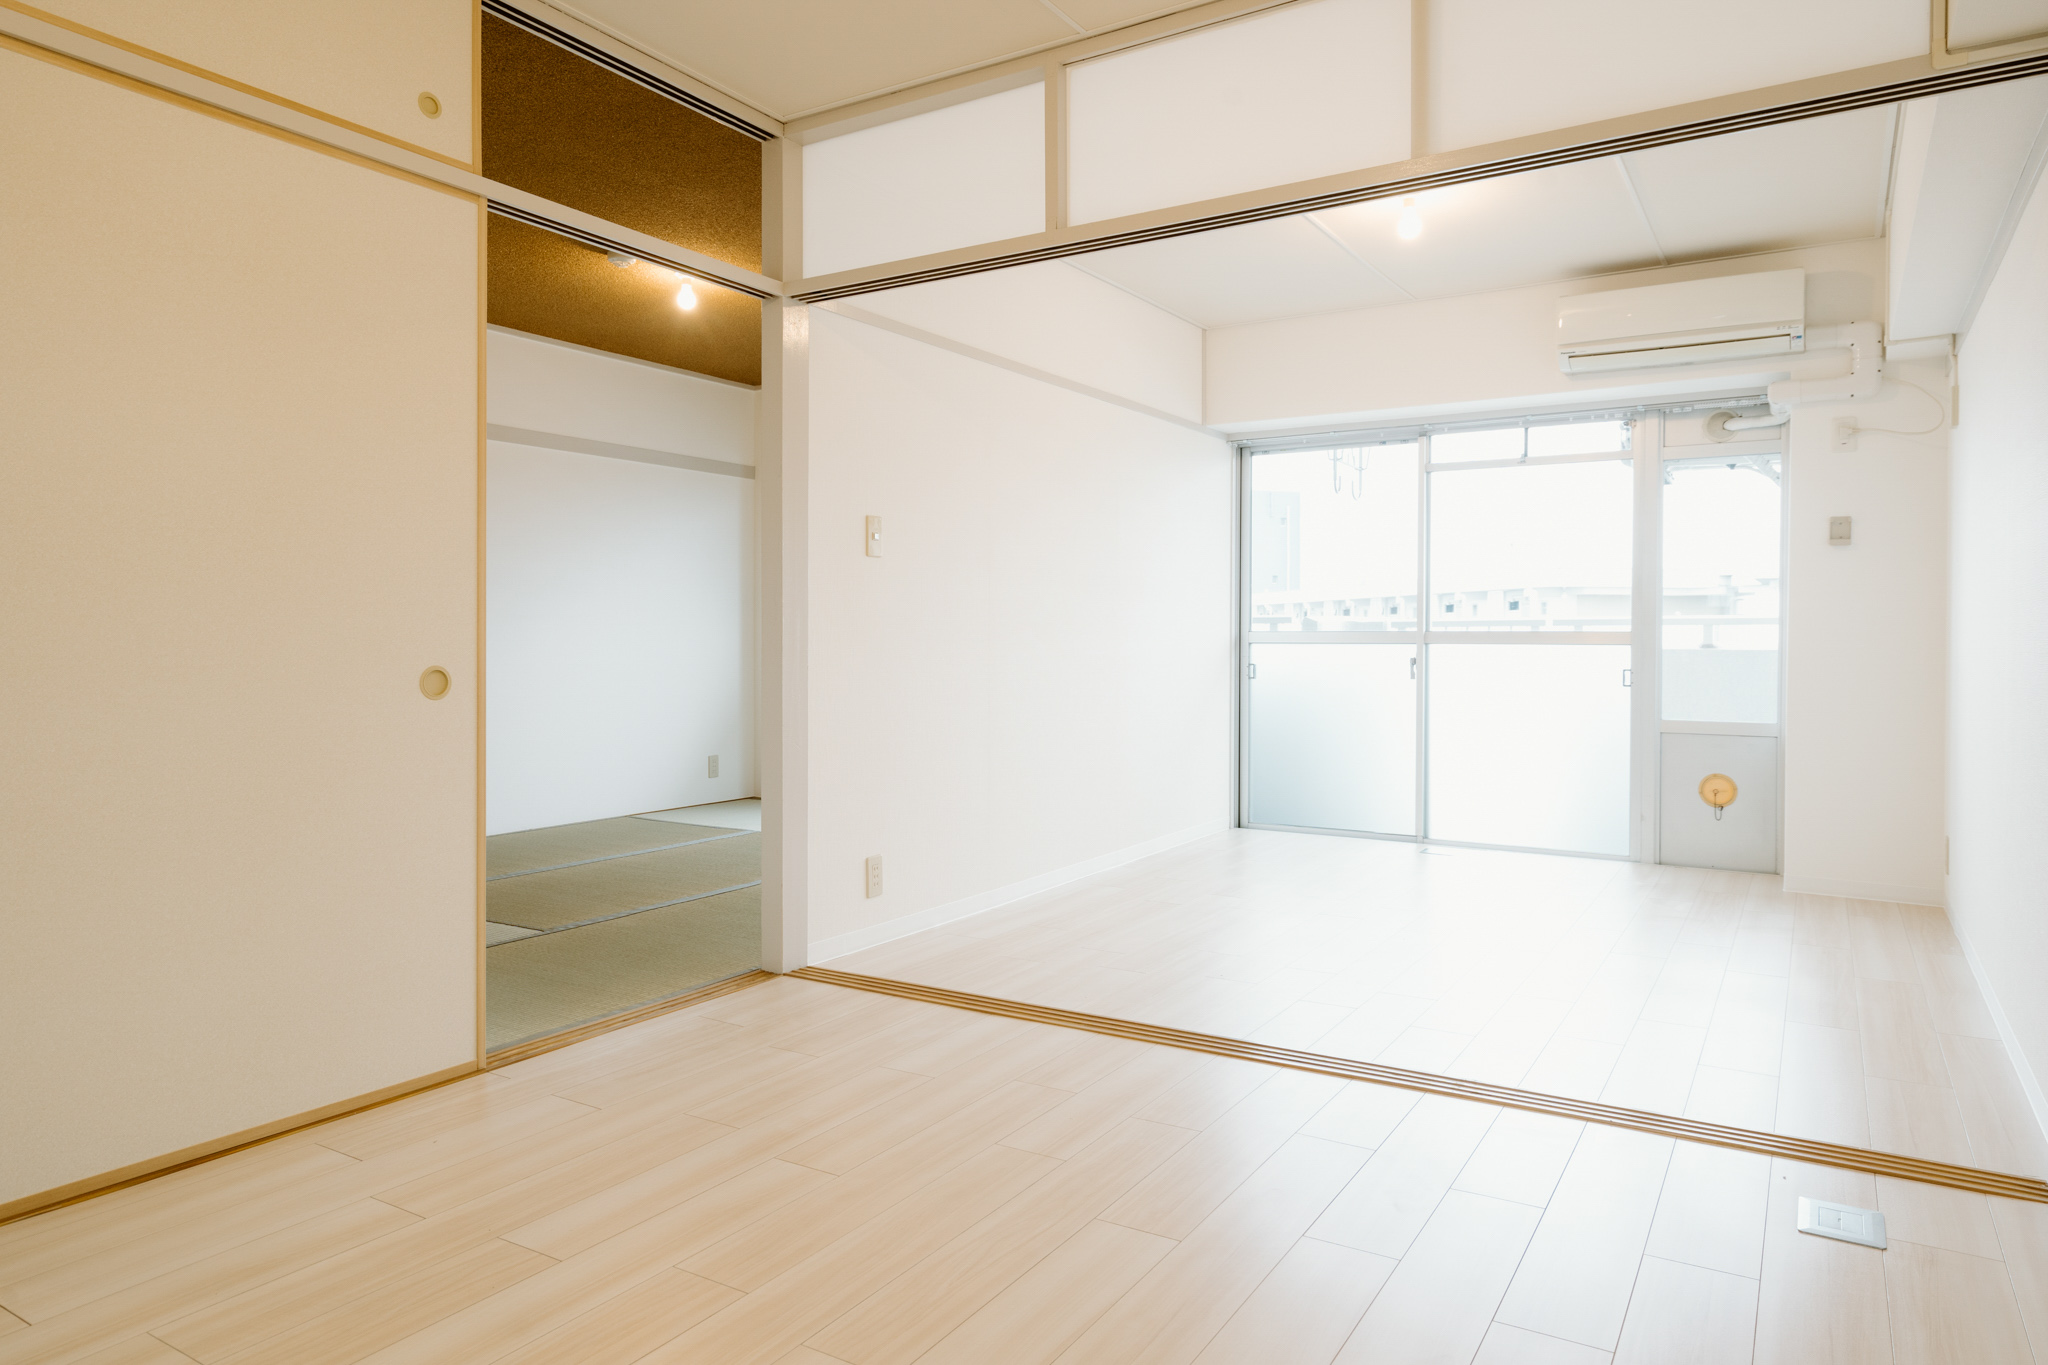 4.5畳の洋室と、6畳の和室。そして5.2畳のダイニングスペースがついた2DKのお部屋です。ふすまを外せばリビングダイニングを広々と使うことができます。床・壁が白を基調としているので、爽やかな印象ですね。